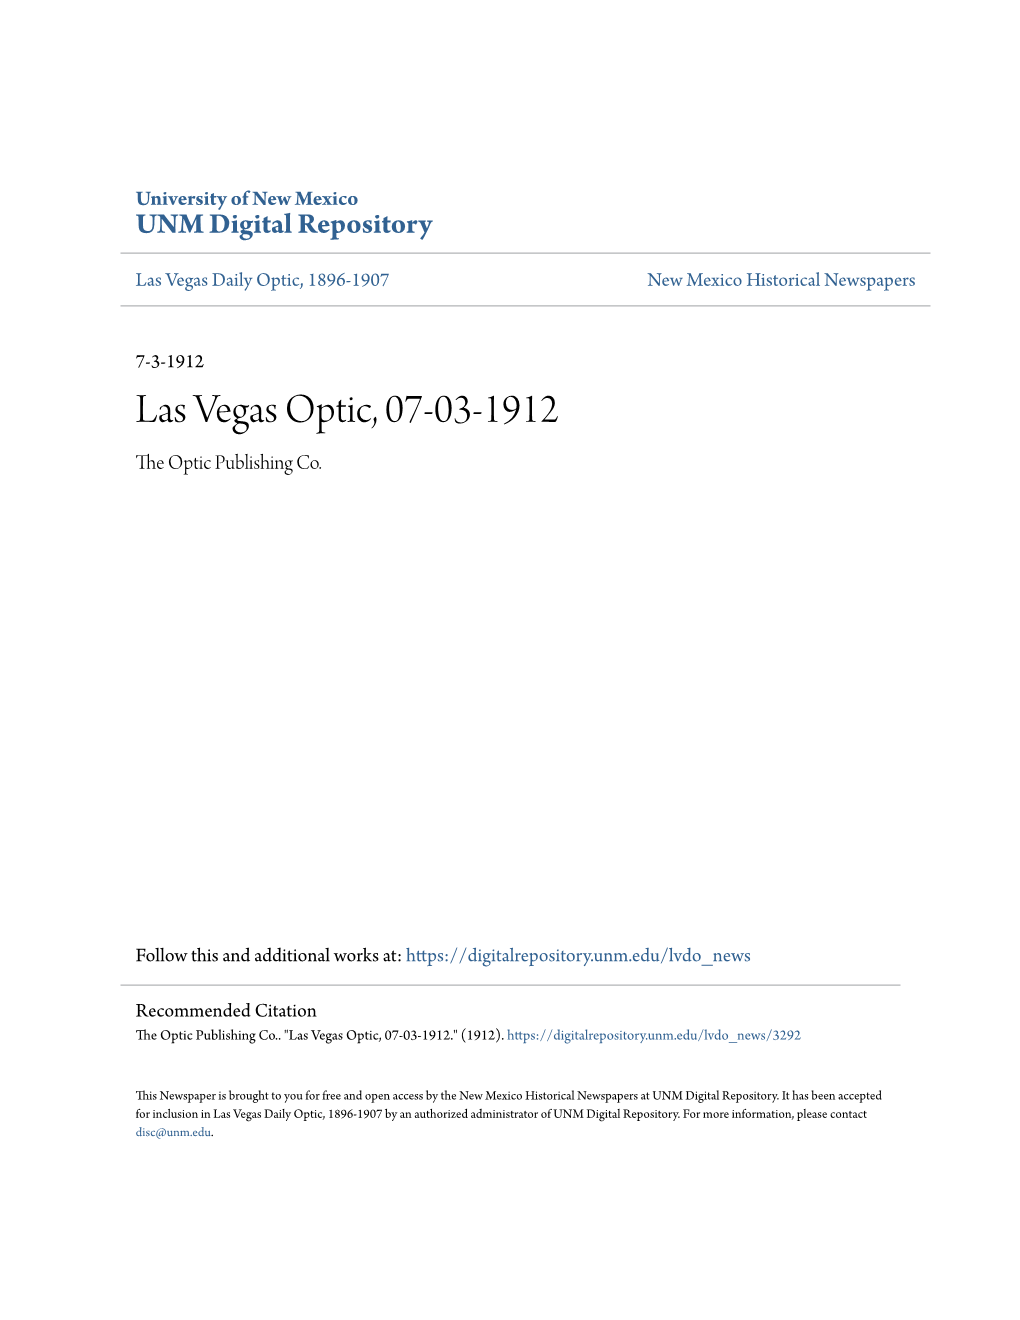 Las Vegas Optic, 07-03-1912 the Optic Publishing Co